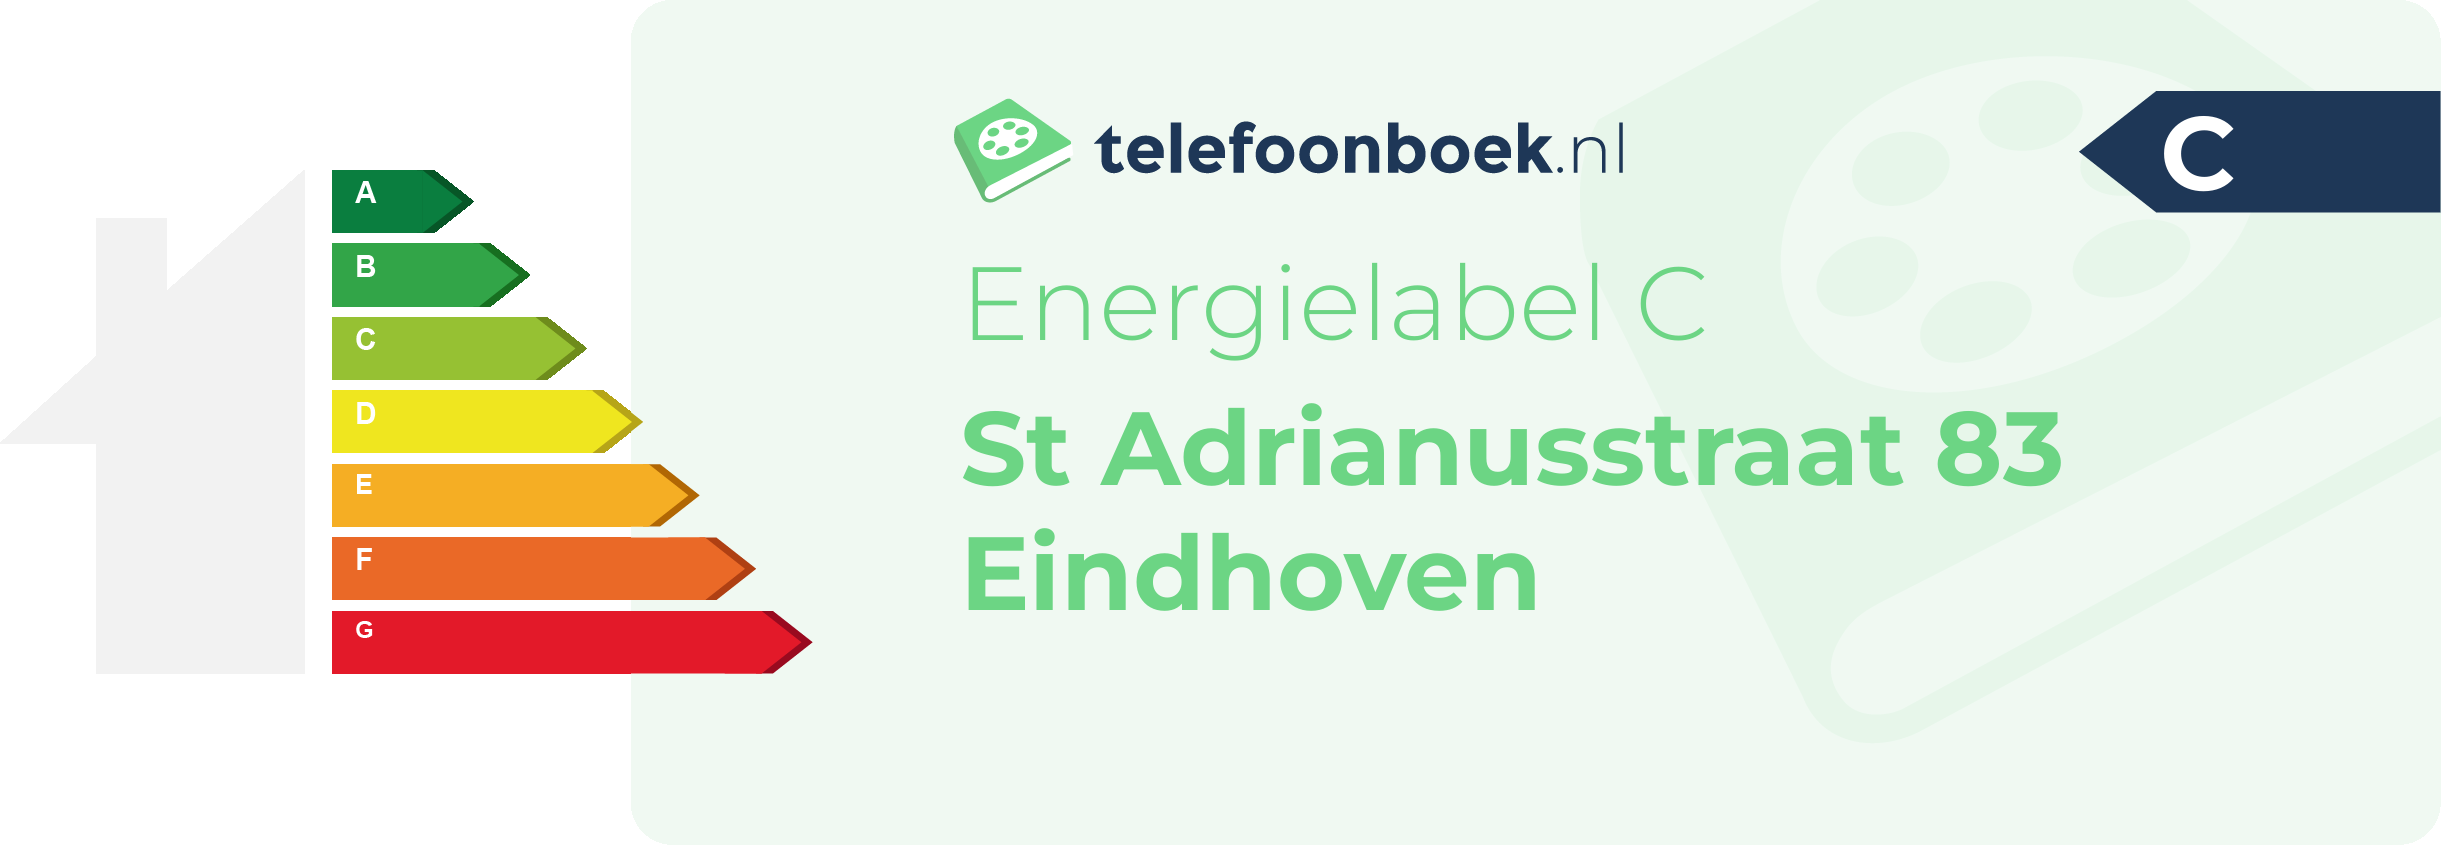 Energielabel St Adrianusstraat 83 Eindhoven